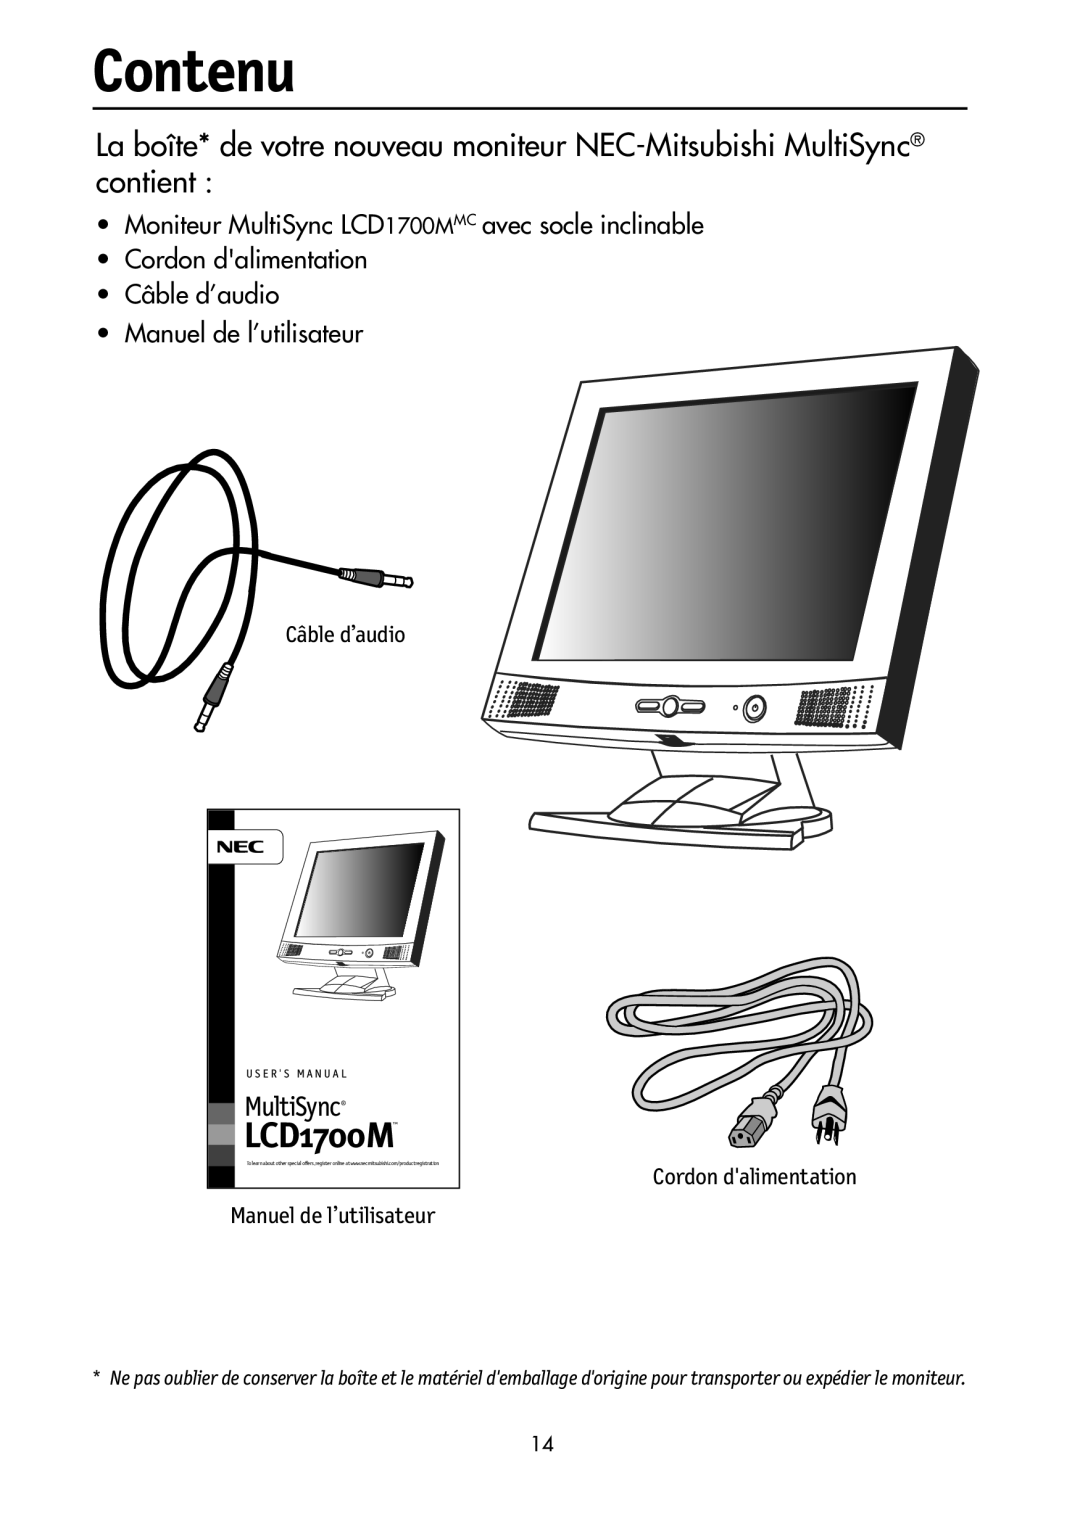 NEC LCD1700M user manual Contenu, La boîte* de votre nouveau moniteur NEC-Mitsubishi MultiSync contient, Câble d’audio 